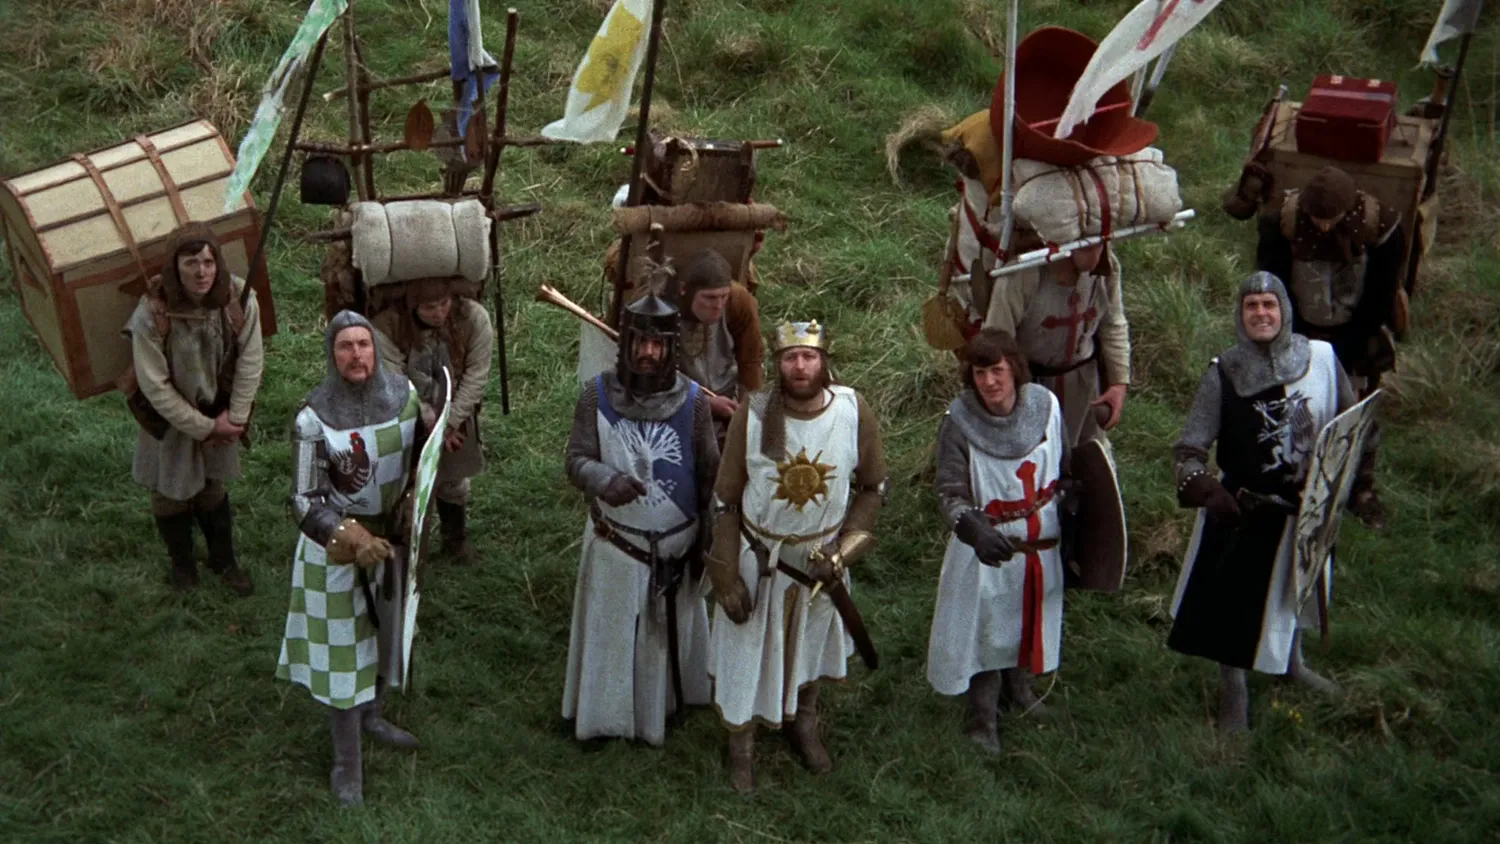 Monty Python film "Holy Grail"